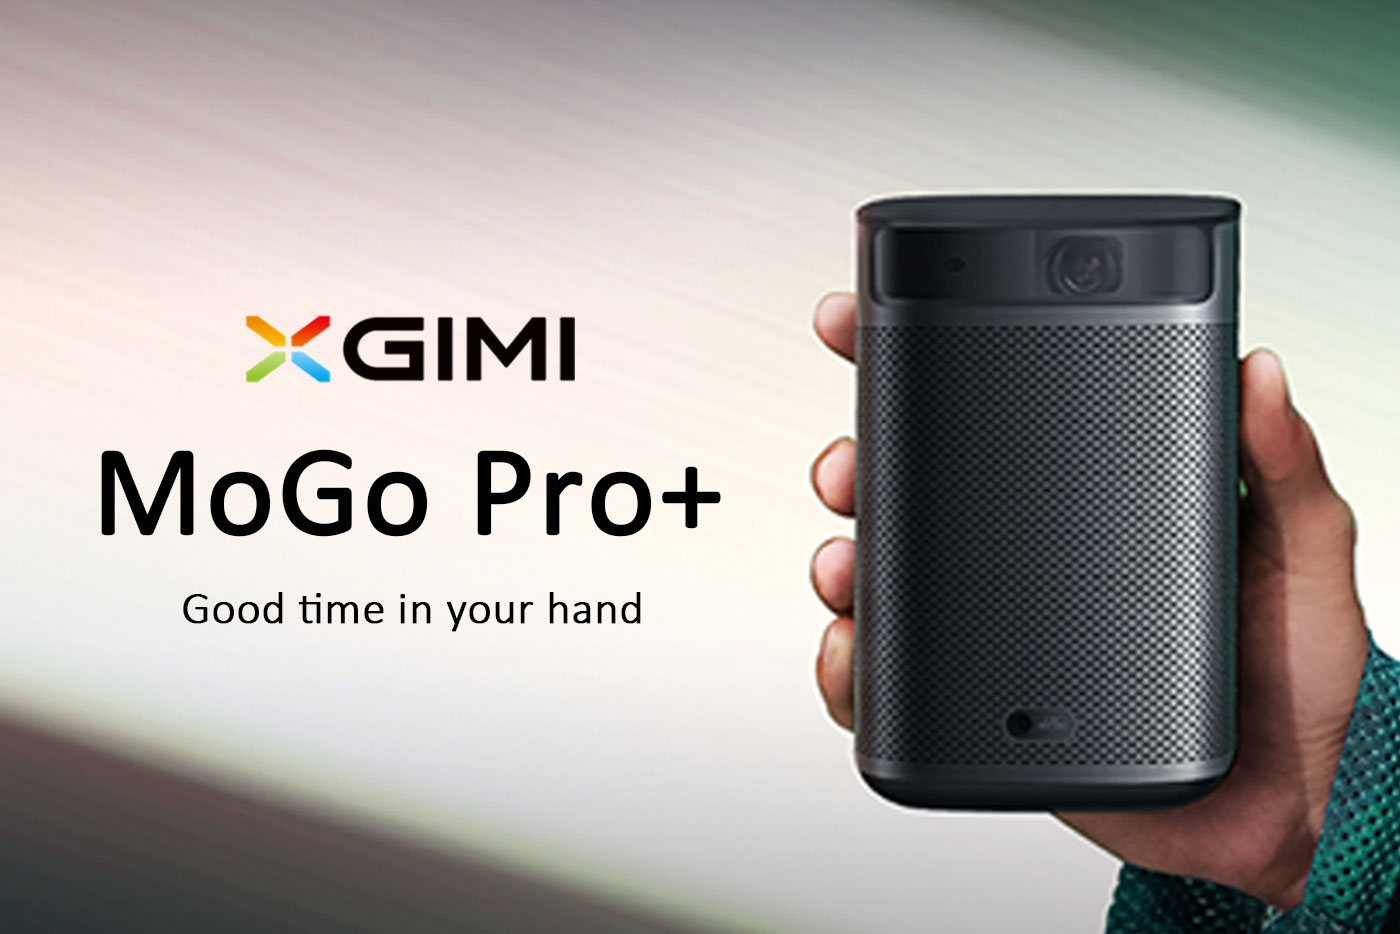 テレビ/映像機器 プロジェクター XGIMI MoGo Pro+ モゴプロプラス 小型サイズの最強モバイル 